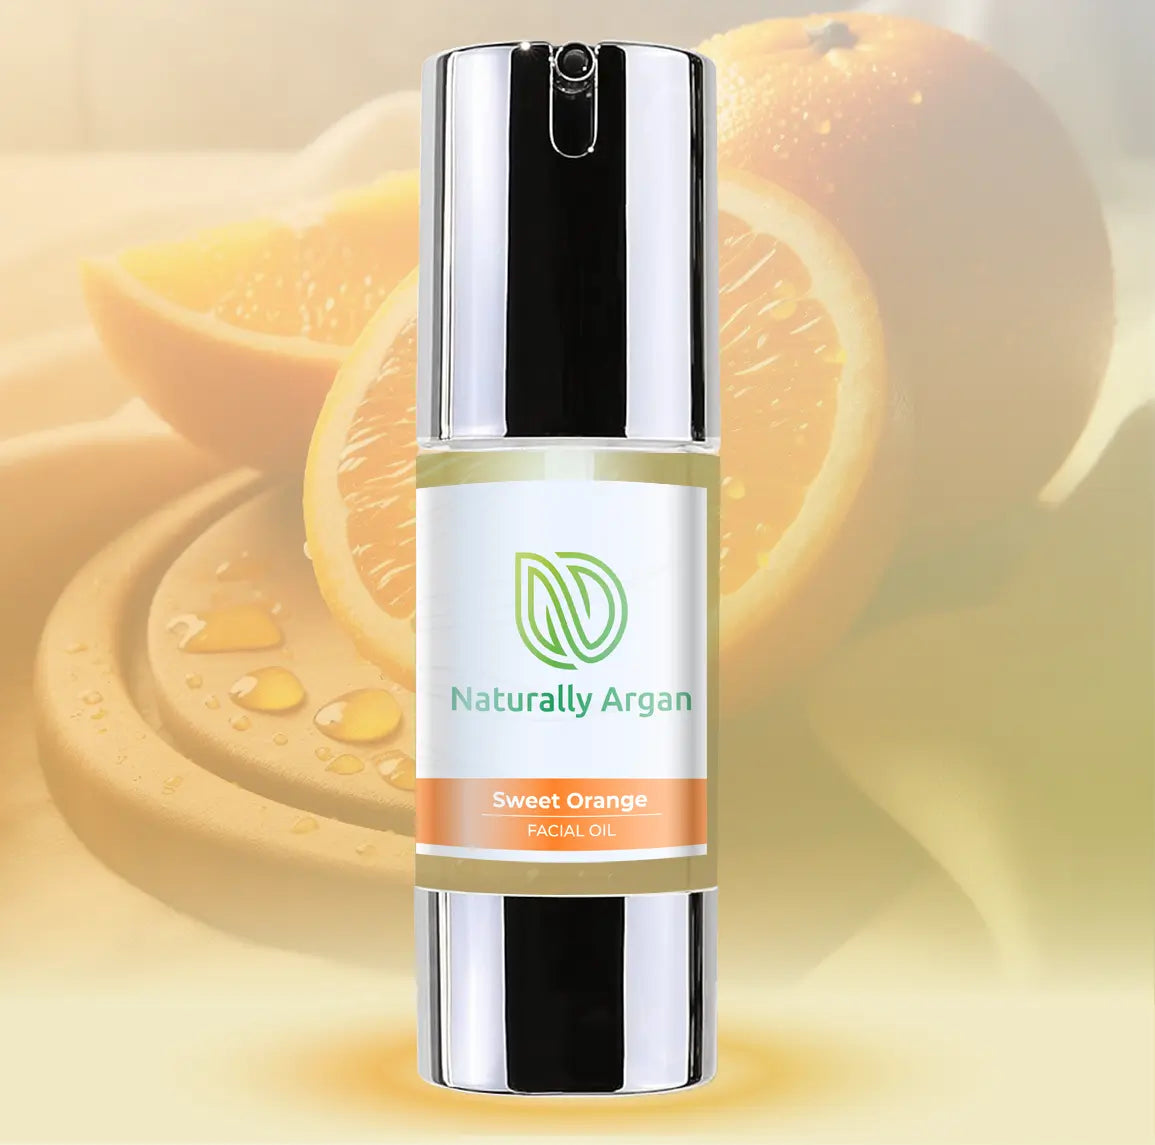 Sweet Orange - Argan facial oil